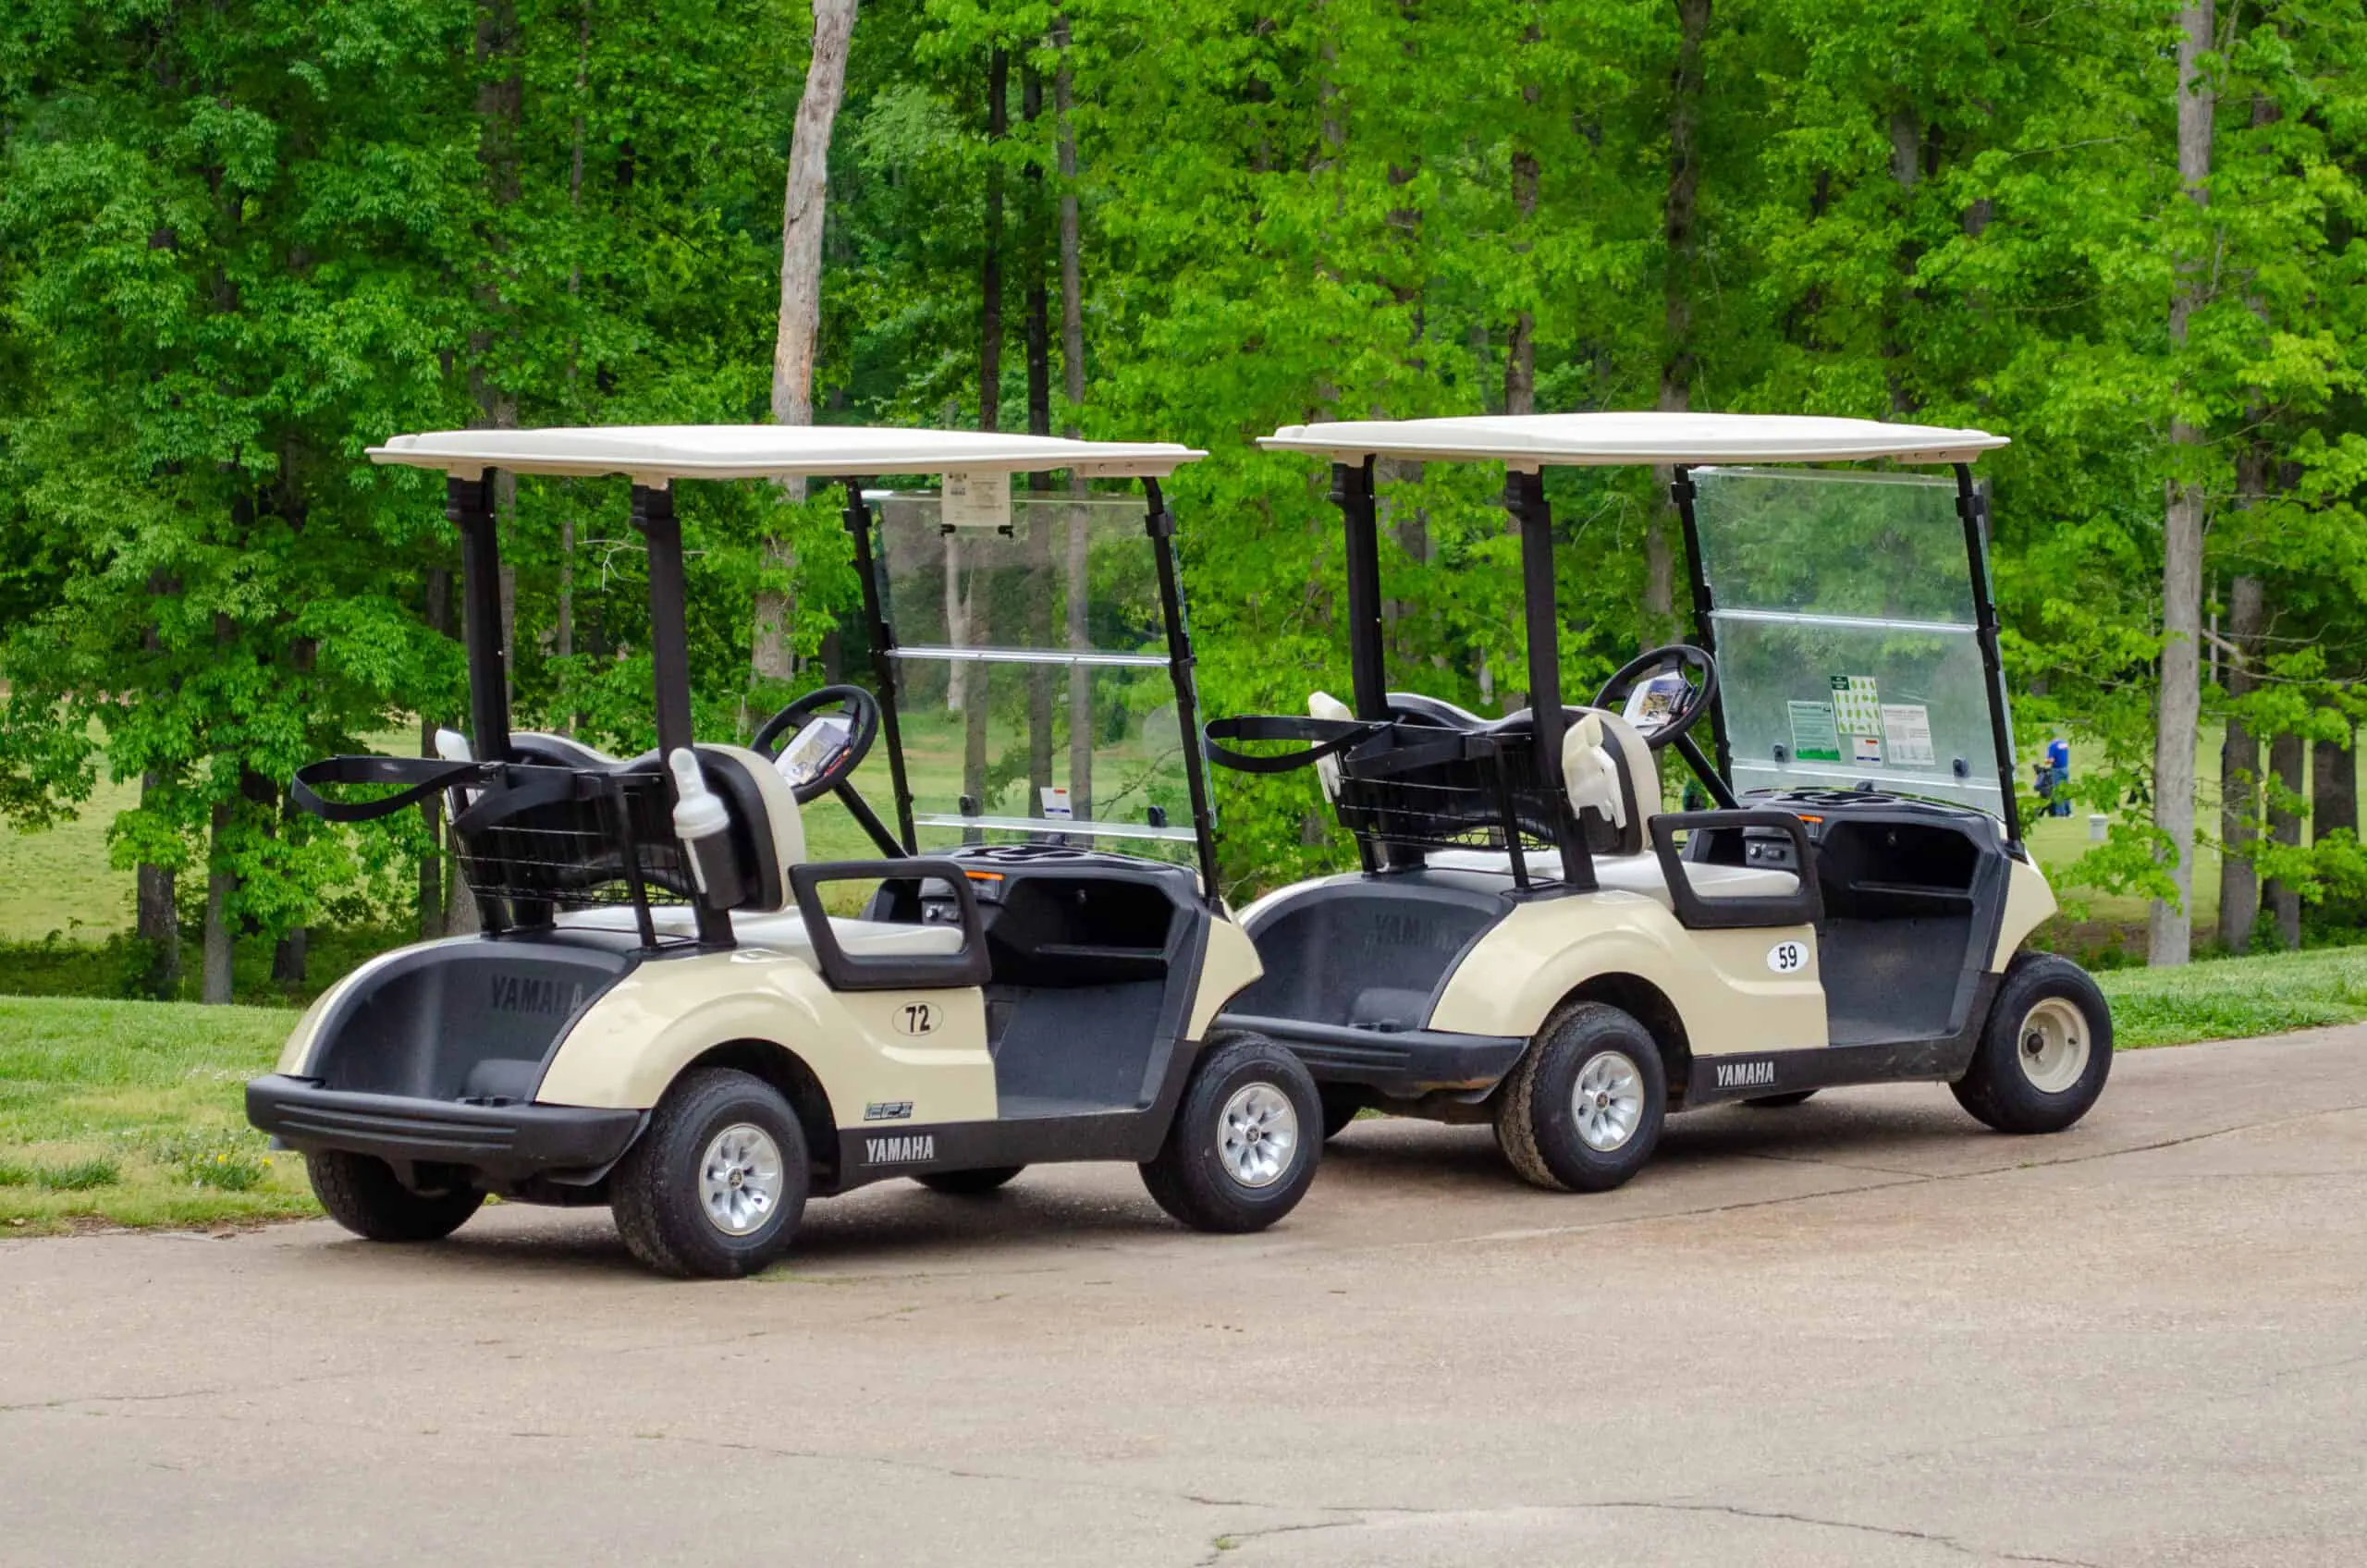 Golf Cart Tips